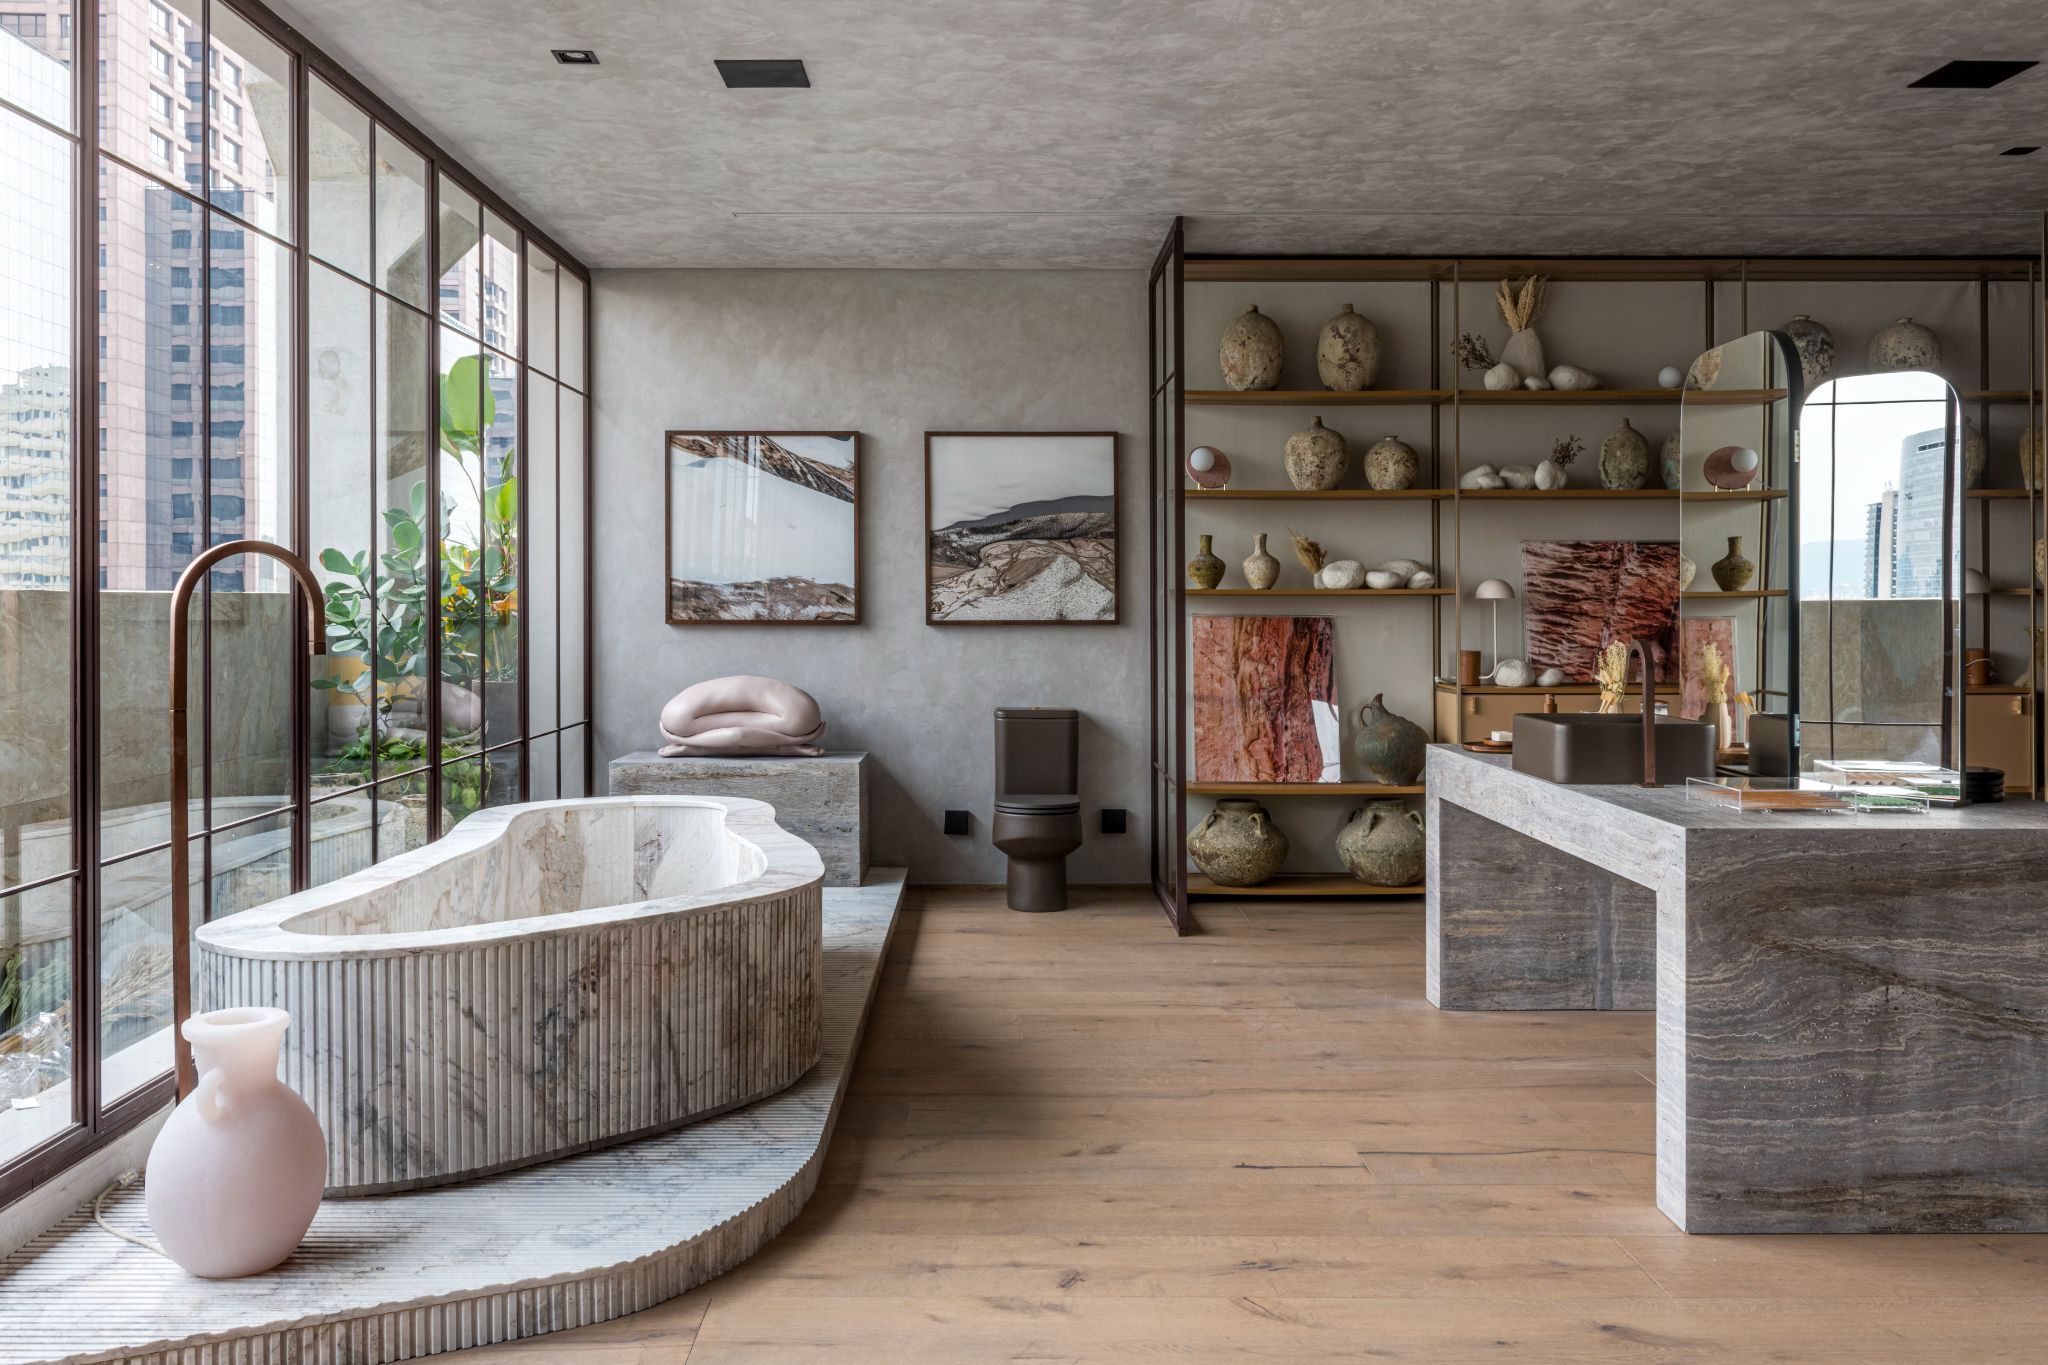 Banheiro destacado por suas curvas, texturas, formas irregulares e pelo uso de materiais naturais, como o mármore canelado na banheira e madeira no piso.